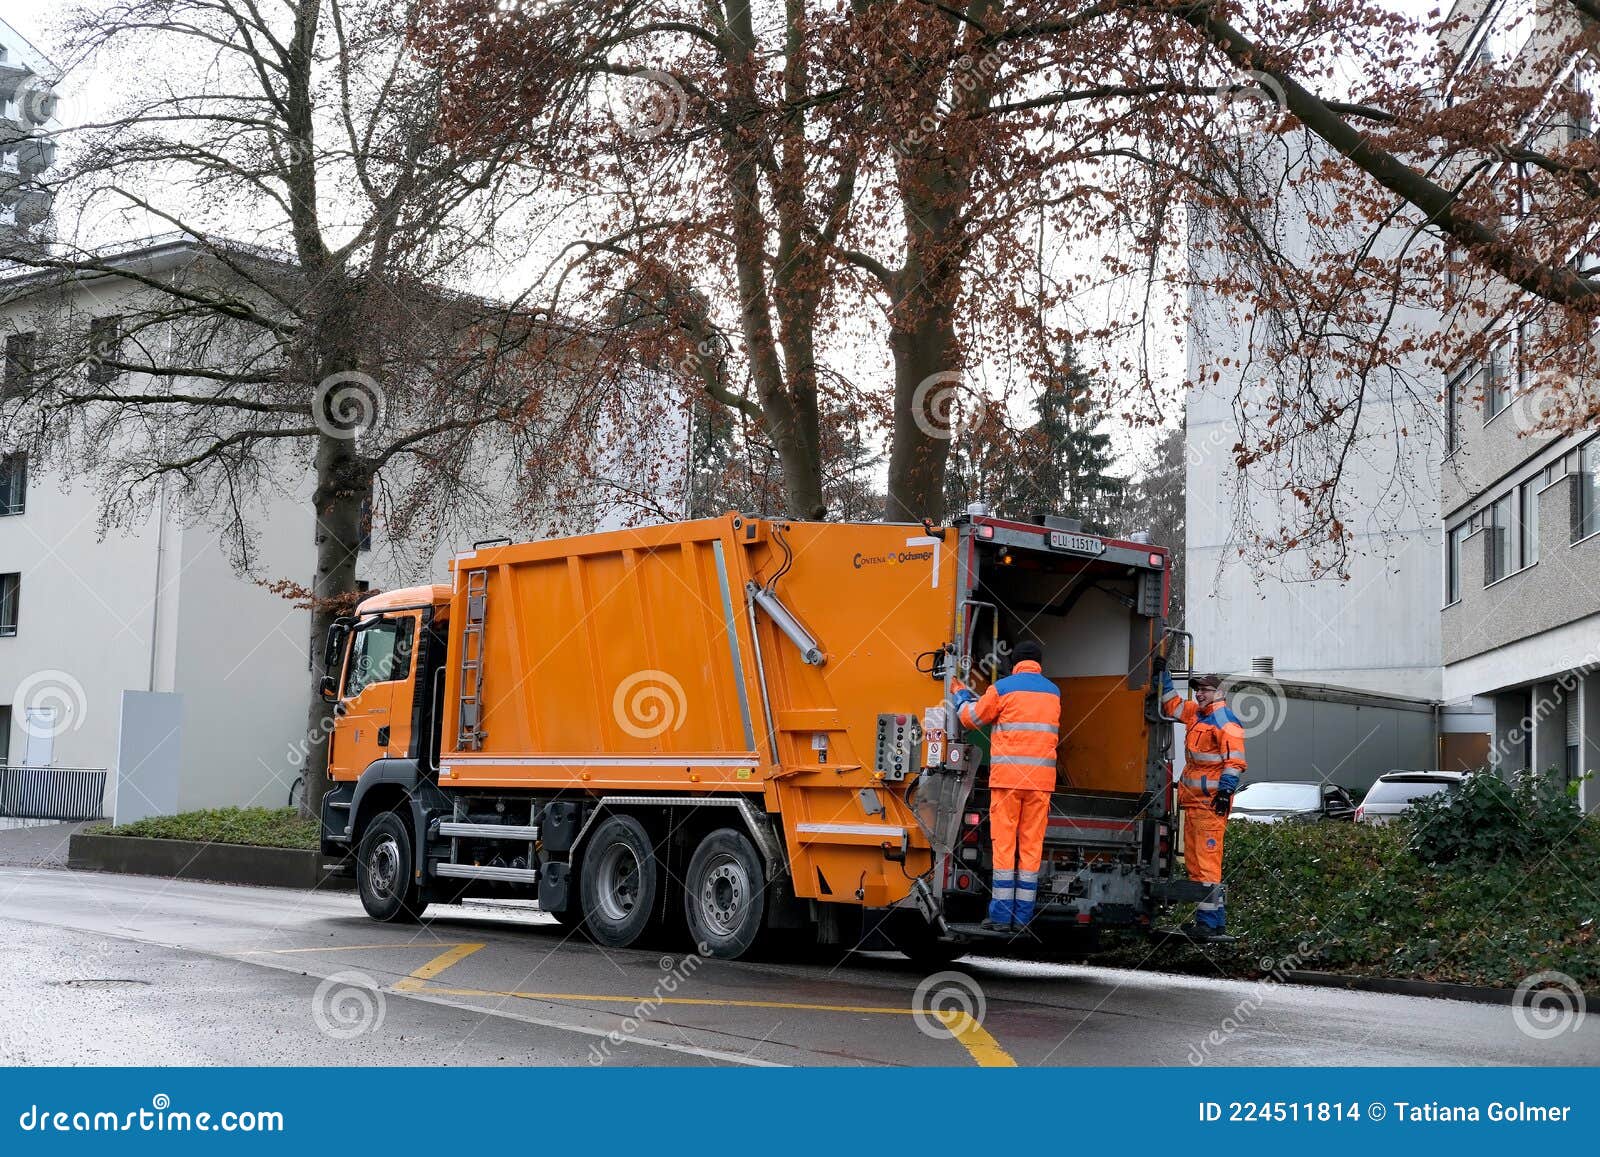 Ville de Neuchâtel: Beau comme un camion-poubelle, mais surtout